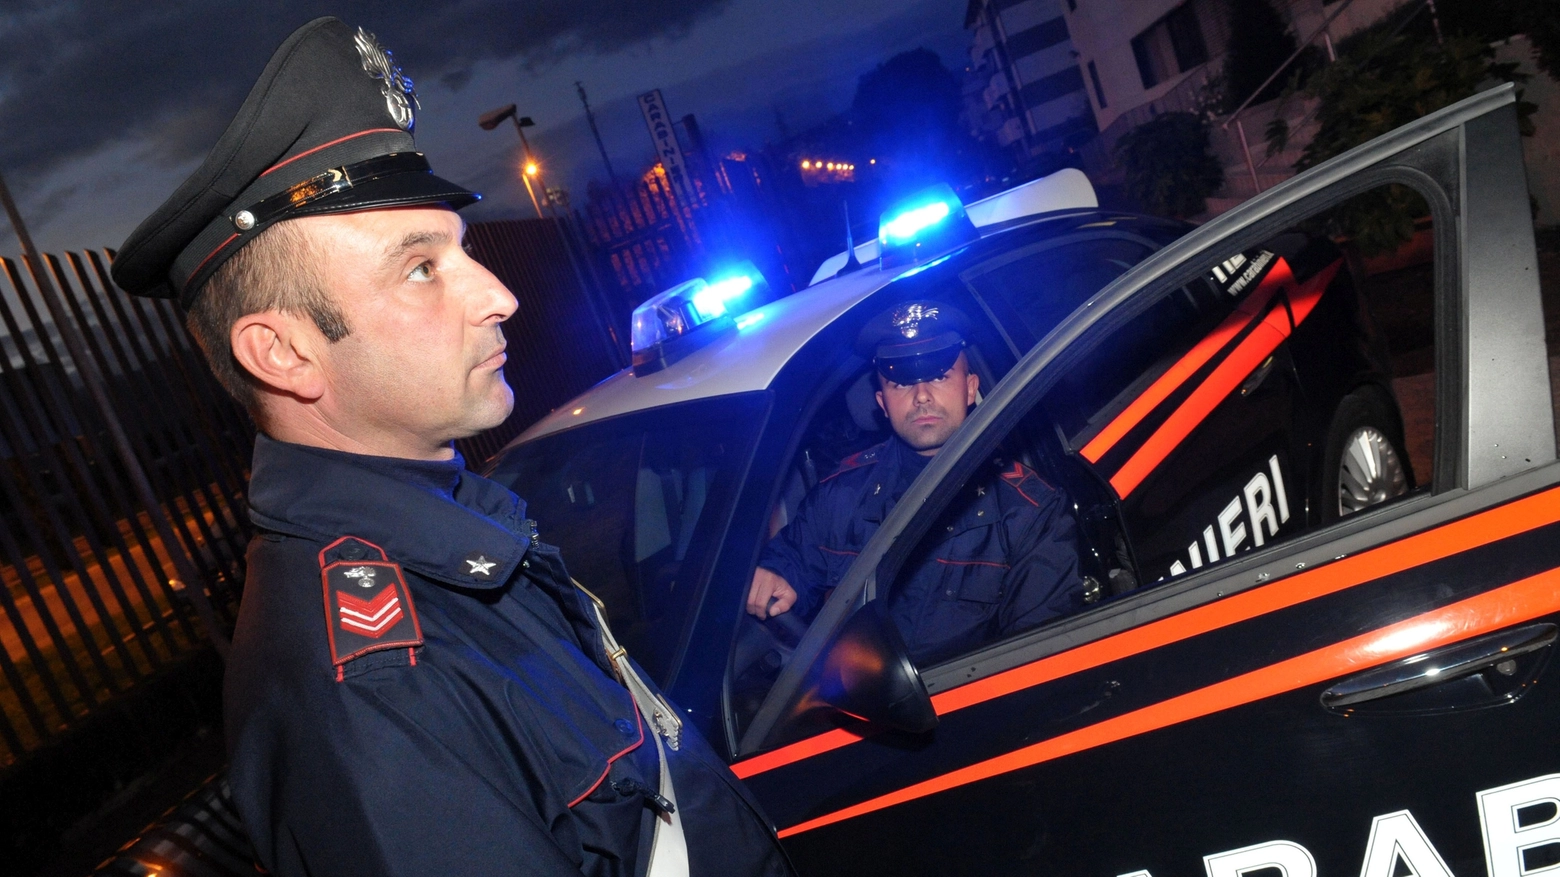 Sono intervenuti i carabinieri (foto di archivio)